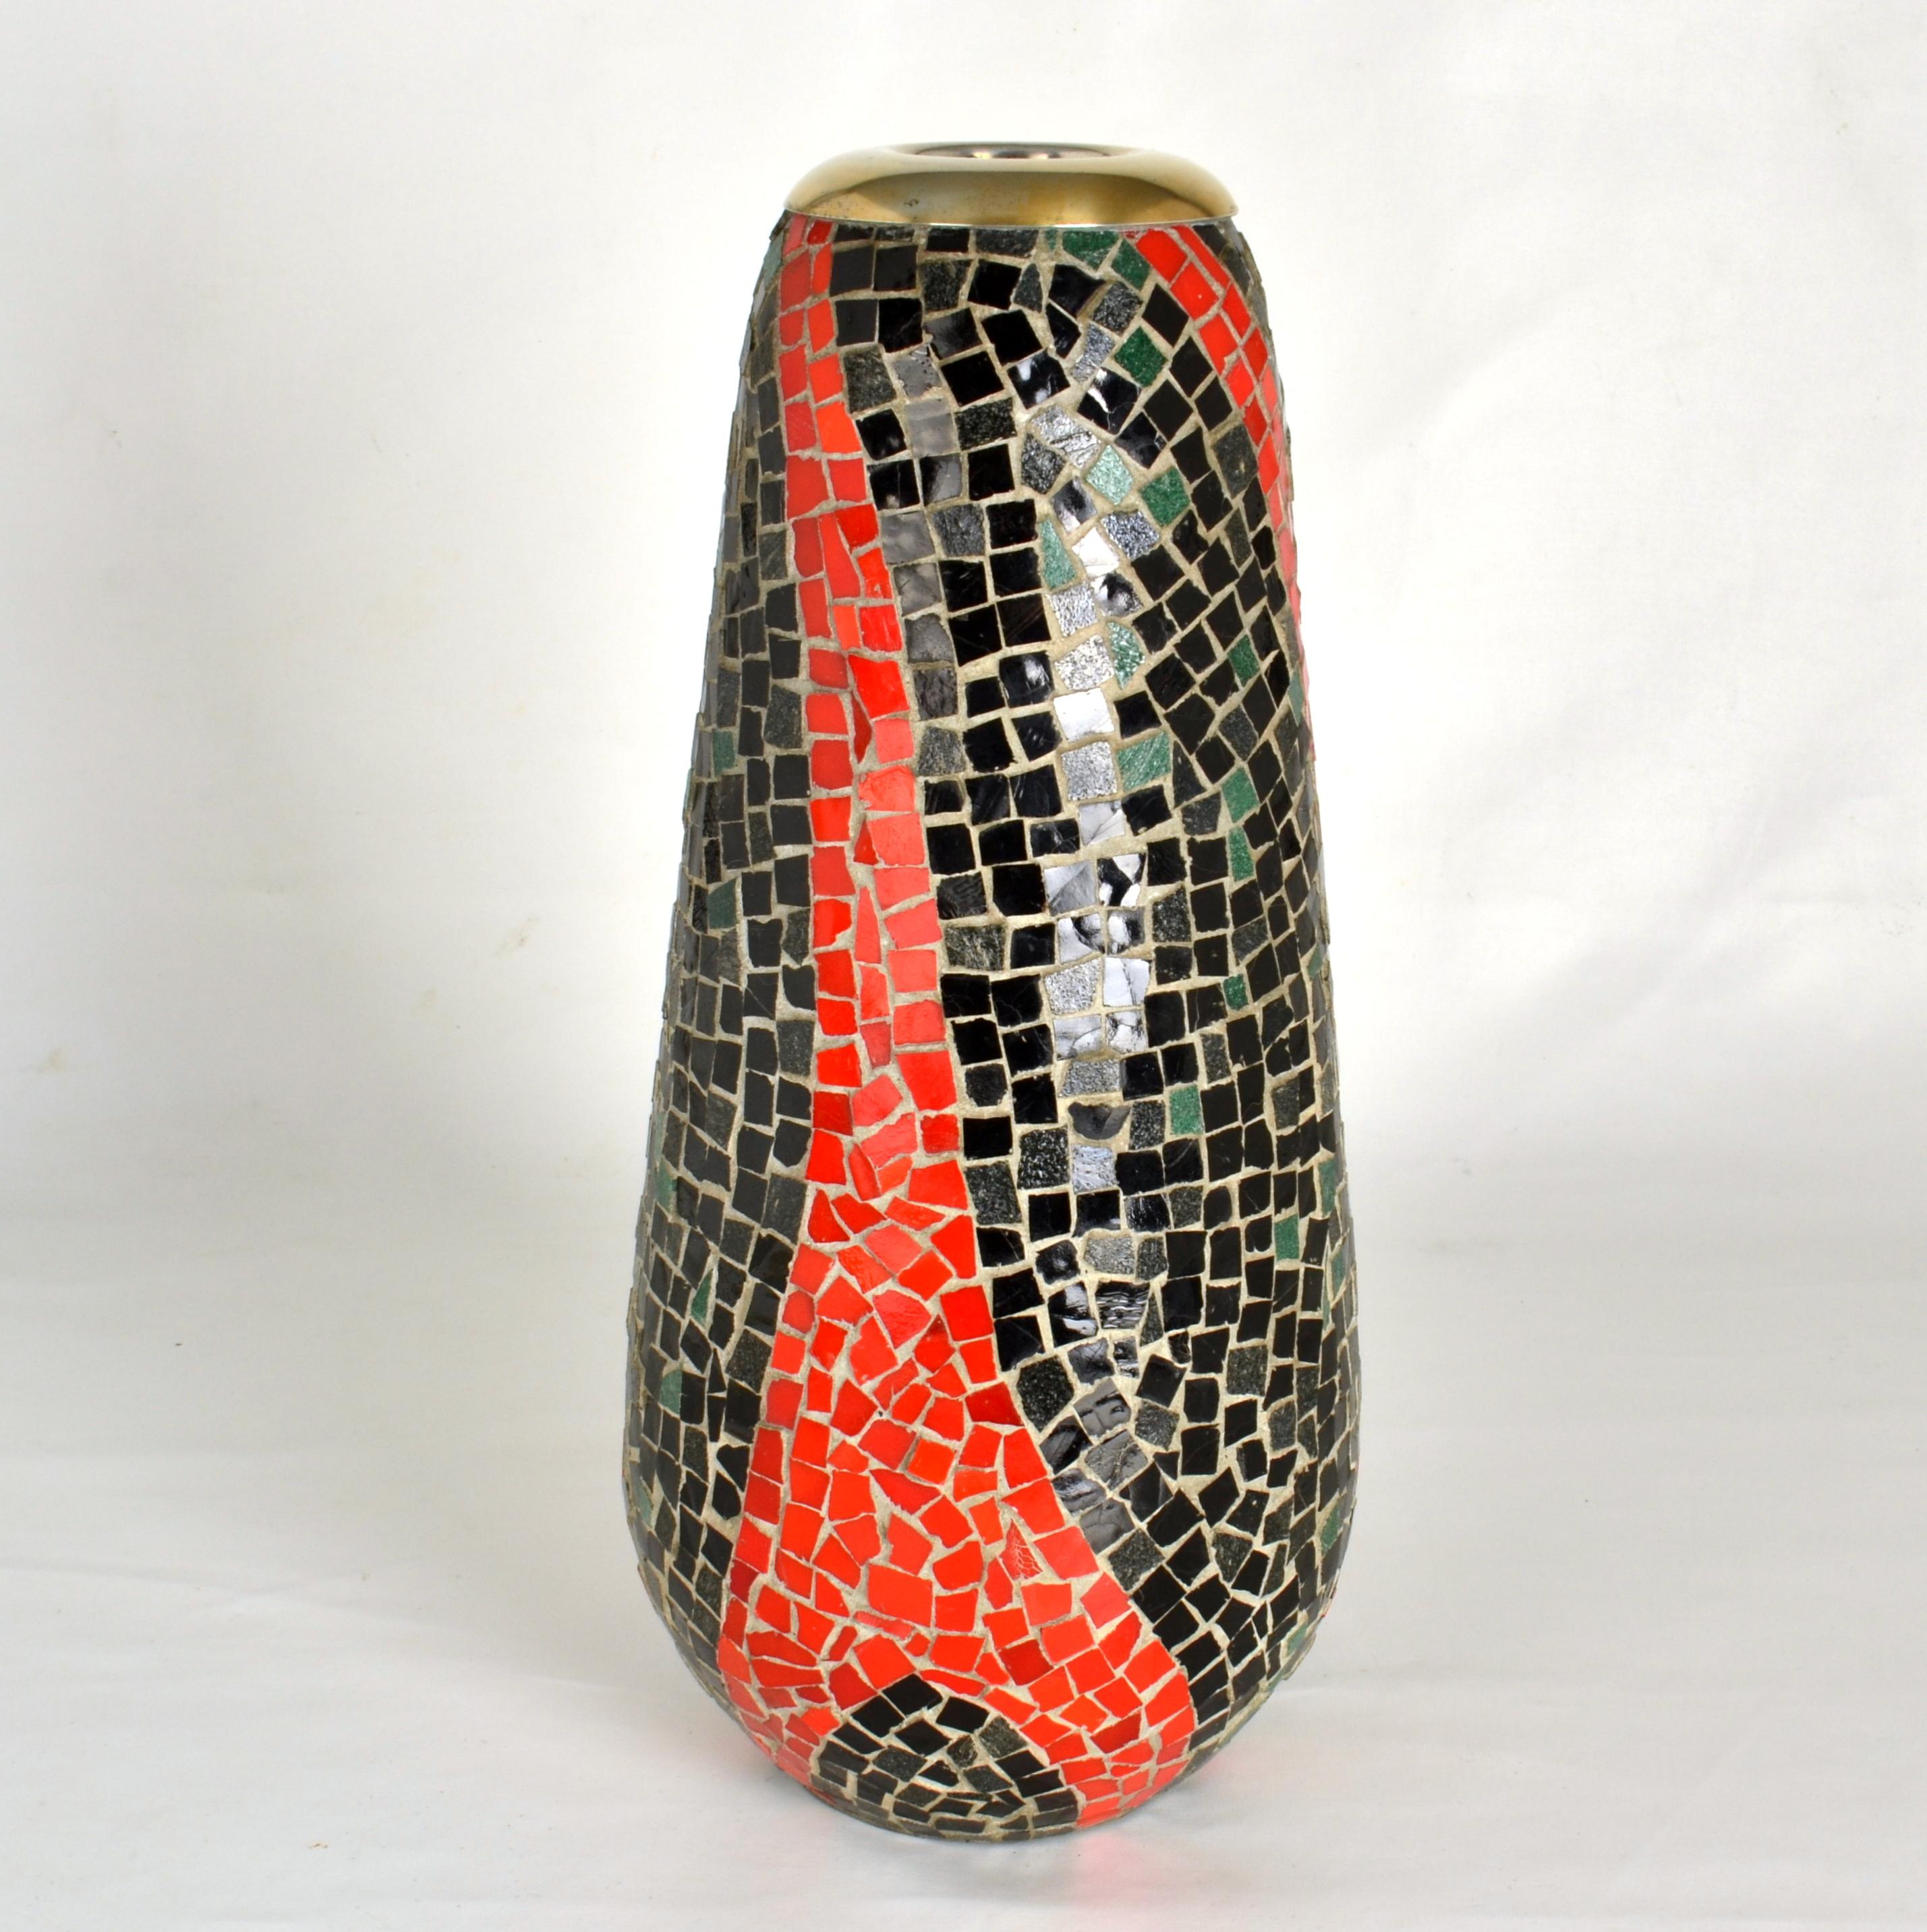 Hohe Vase mit einem organischen Mosaikmuster aus nachtschwarzen und tomatenroten Glasstücken. Das Mosaik wird angewendet auf  eine Glasvase, die als funktionelle Blumenvase dient und mit einem Messingrand versehen ist. Die Öffnung hat einen